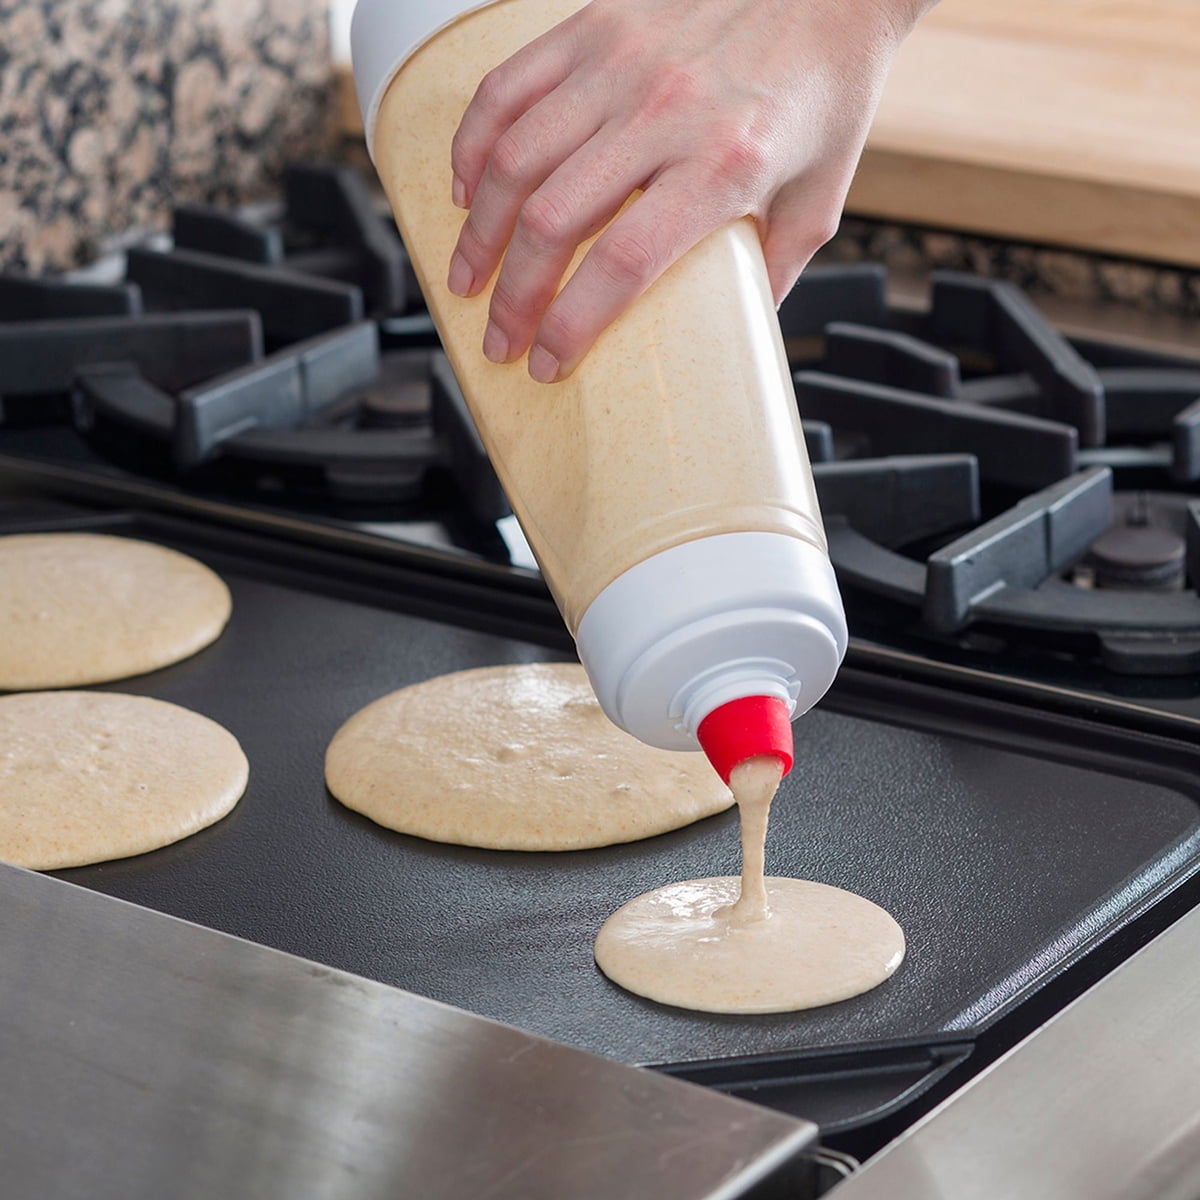 Whiskware Pancake Batter Mixer Review 2022